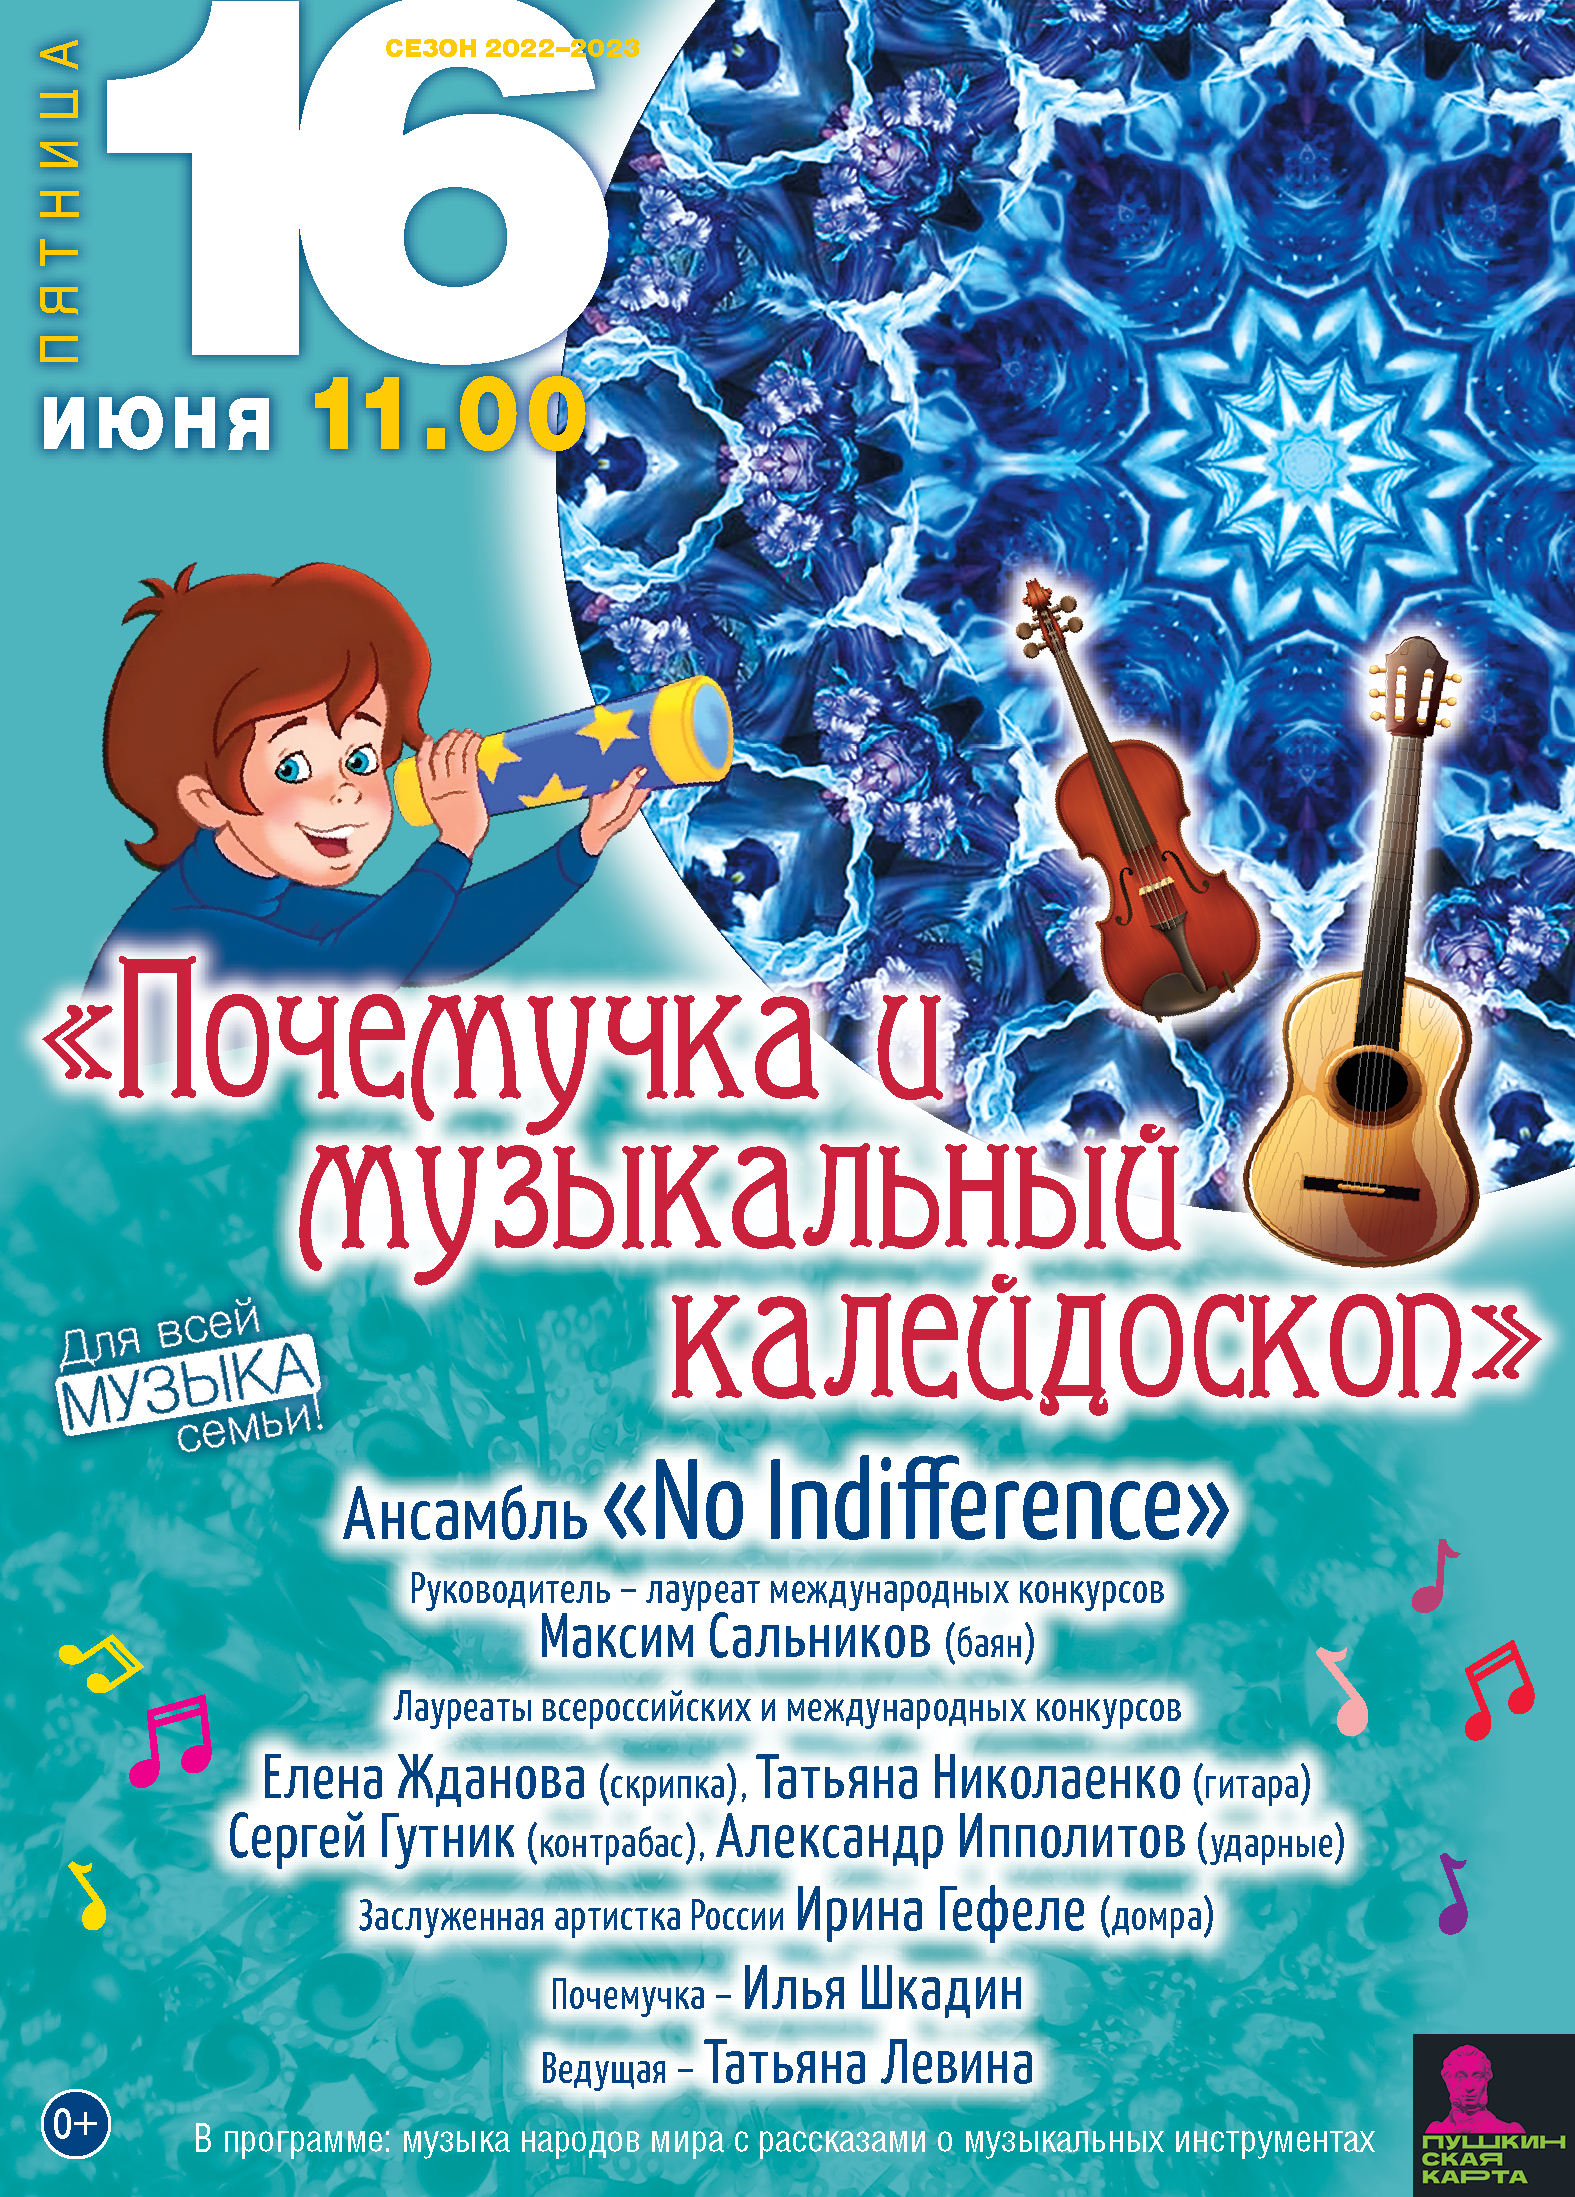 Тверская академическая филармония приглашает на концерт для самых маленьких